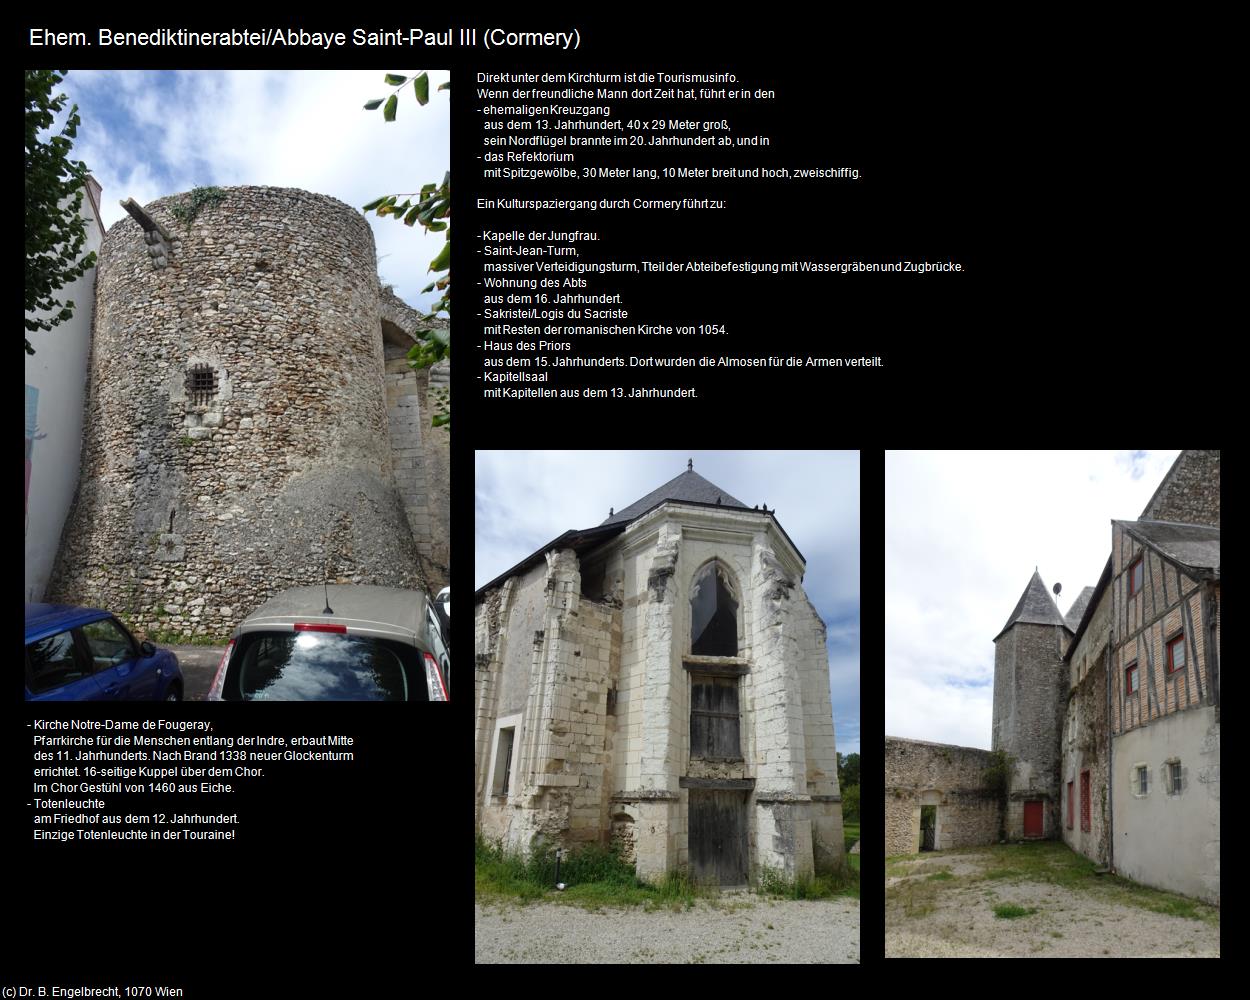 Abbaye Saint-Paul III (Cormery (FR-CVL)) in Kulturatlas-FRANKREICH